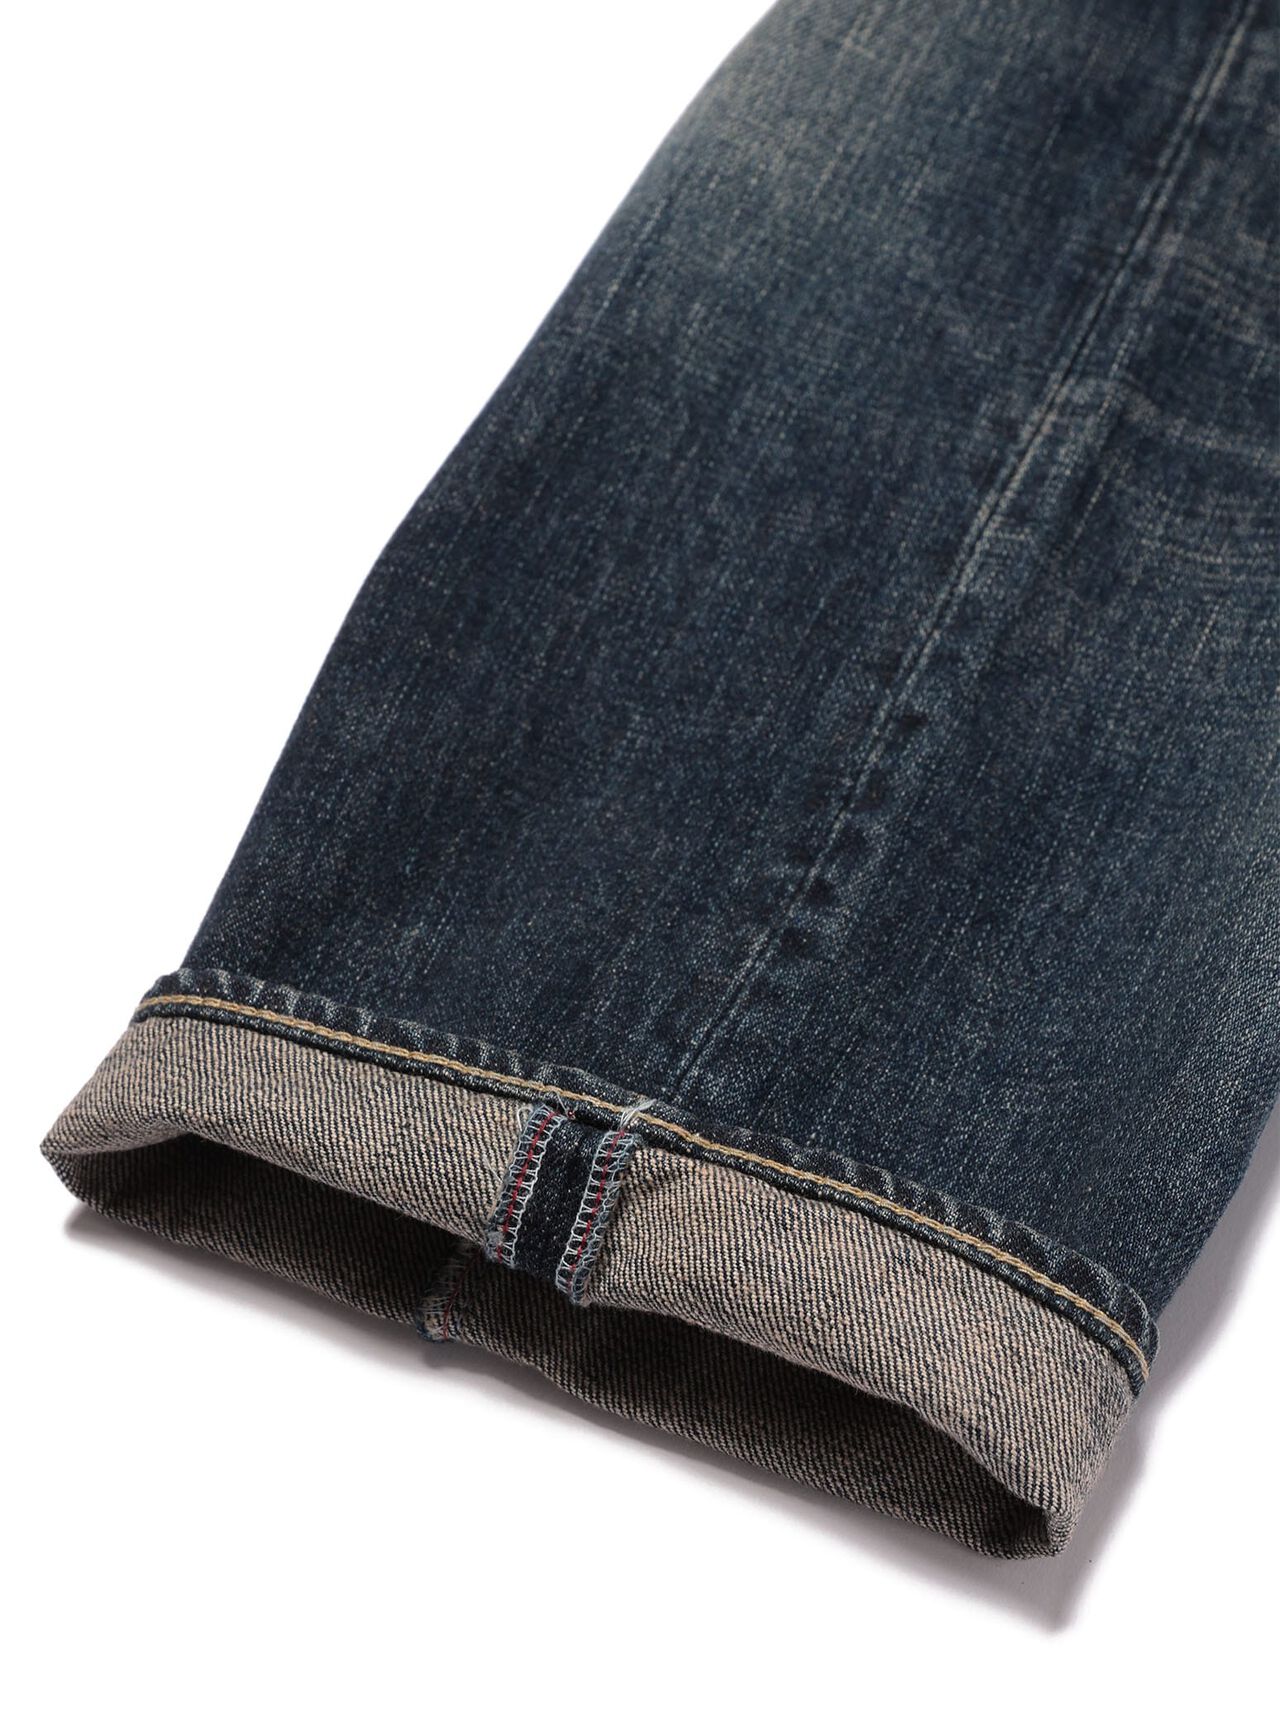 Jeans - Regular 22-U2 Four knees,, large image number 7